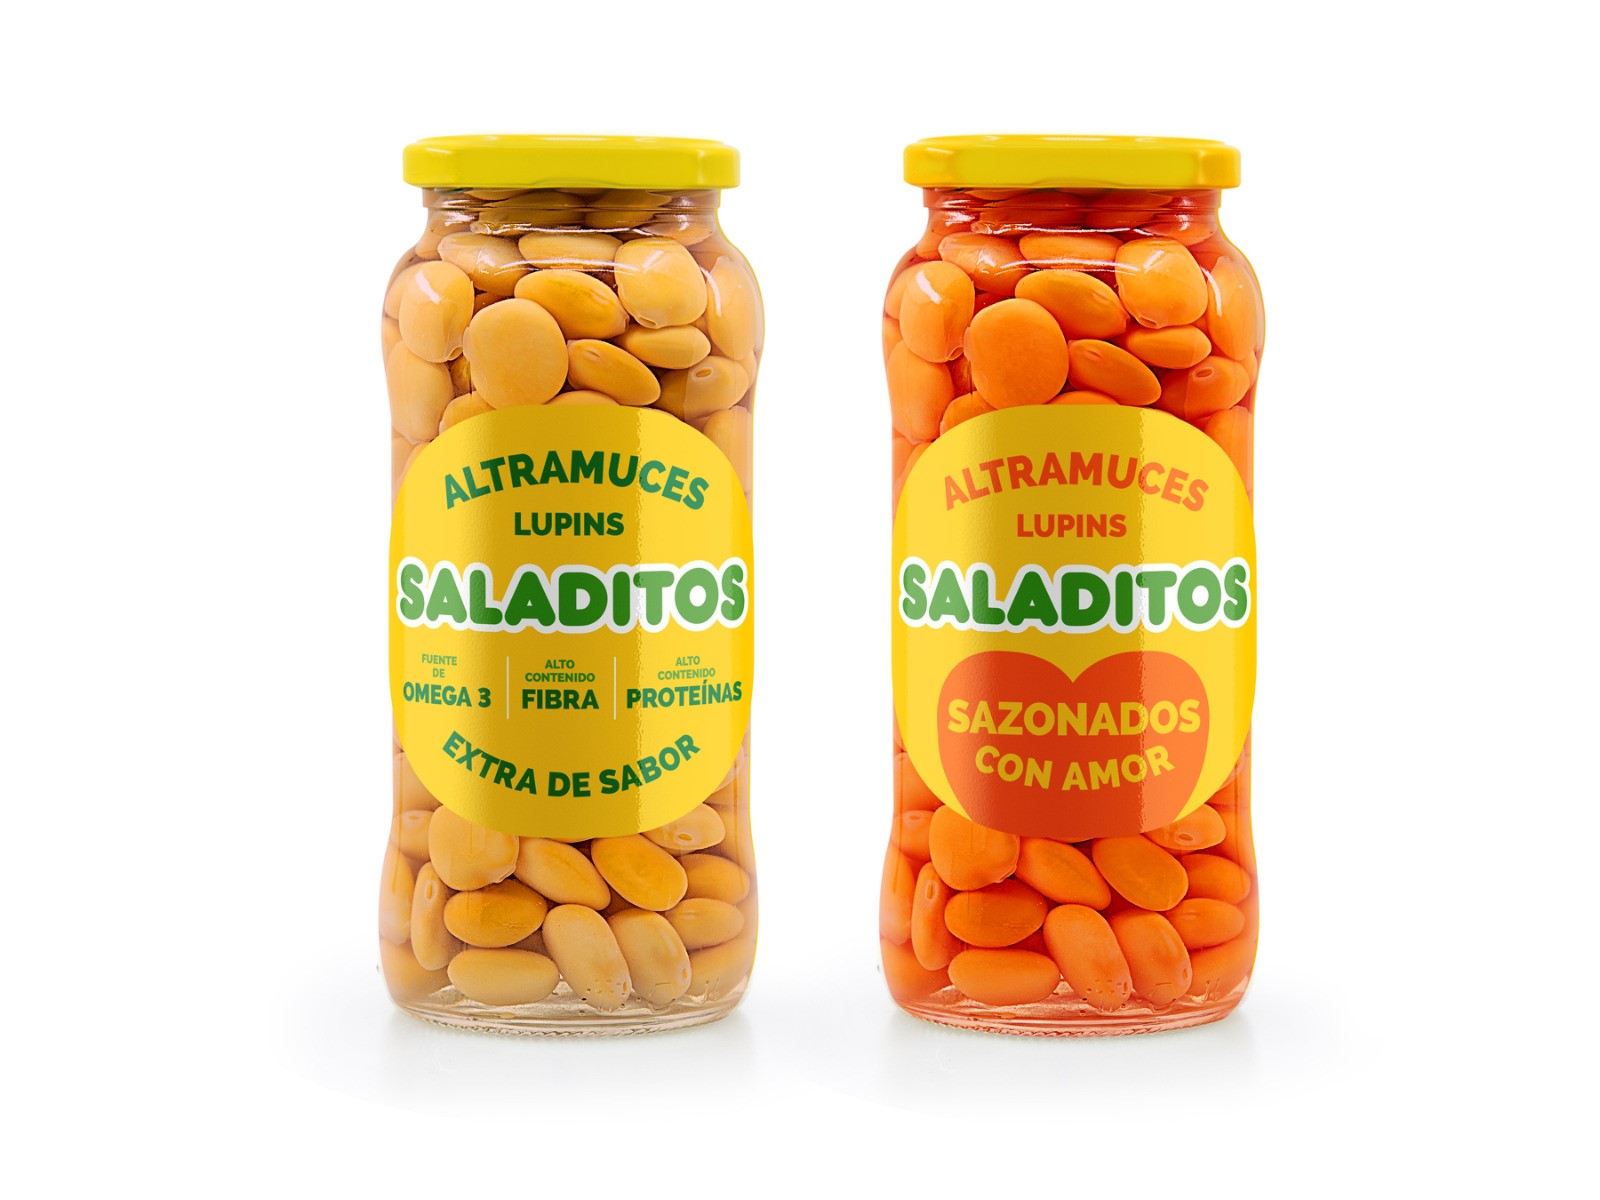 #SALADITOSSAZONADOS- Pack de 6 Tarros cristal 380 g (3 tarros de 380 g originales y 3 tarros de 380 g sazonados con amor)